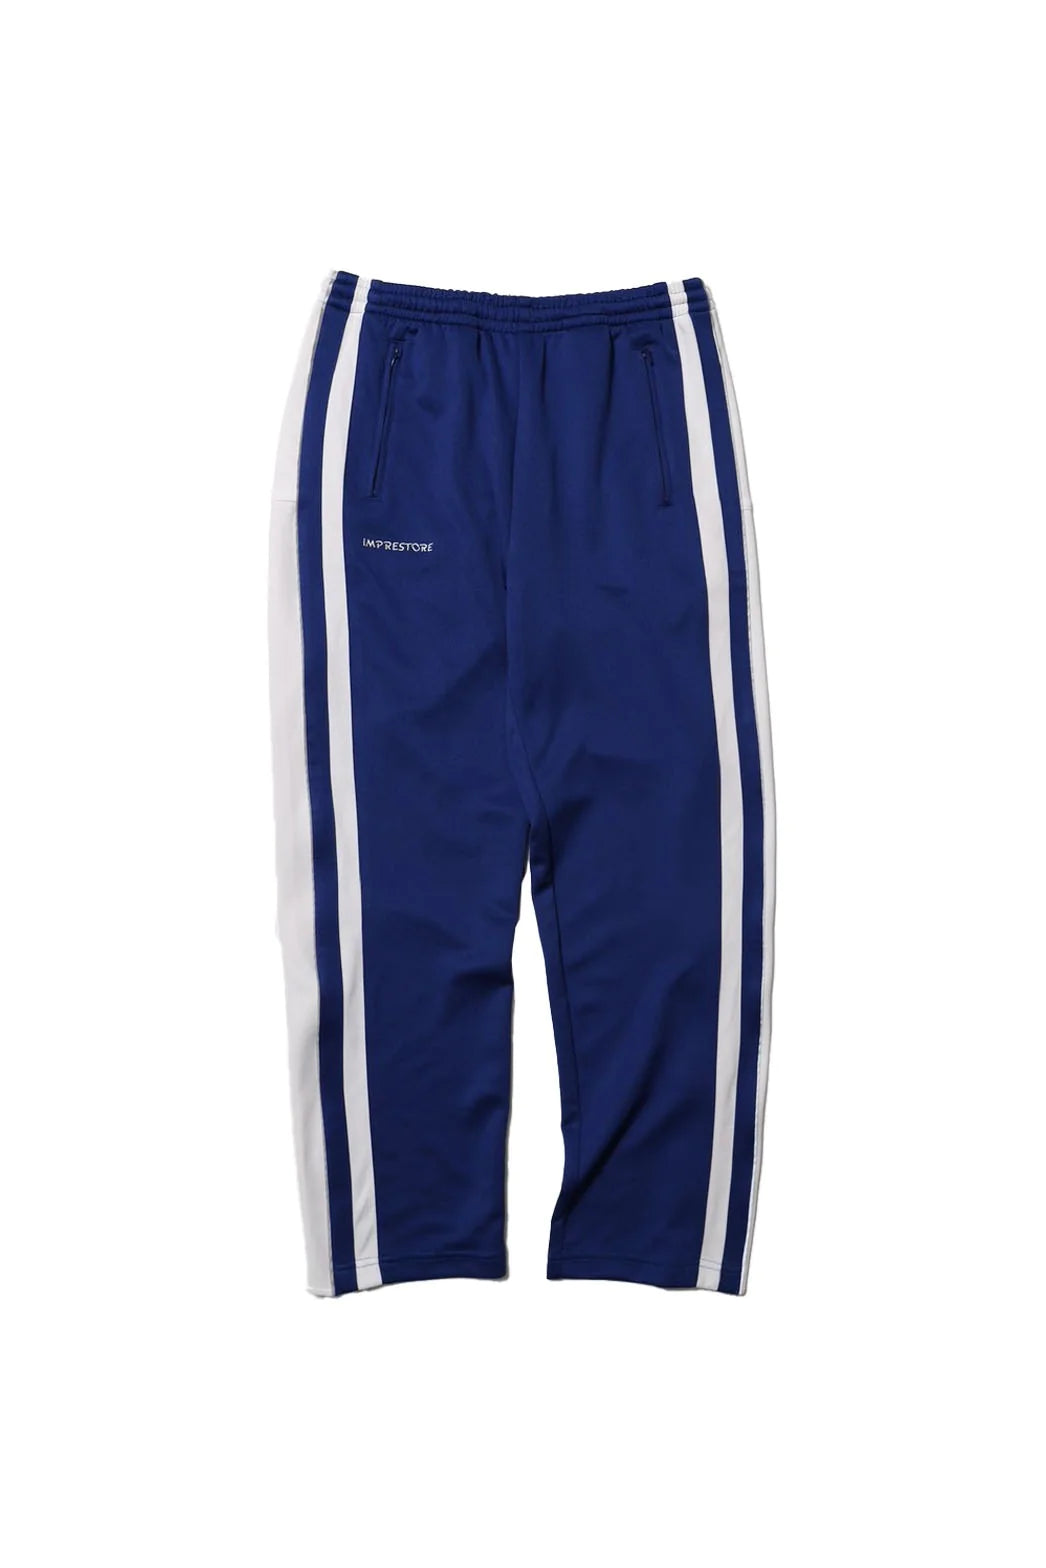 No:Warren | Name:Basket Jersey Pants | Color:Blue/maroon【IMPRESTORE_インプレストア】【NASNGWAM_ナスングワム】